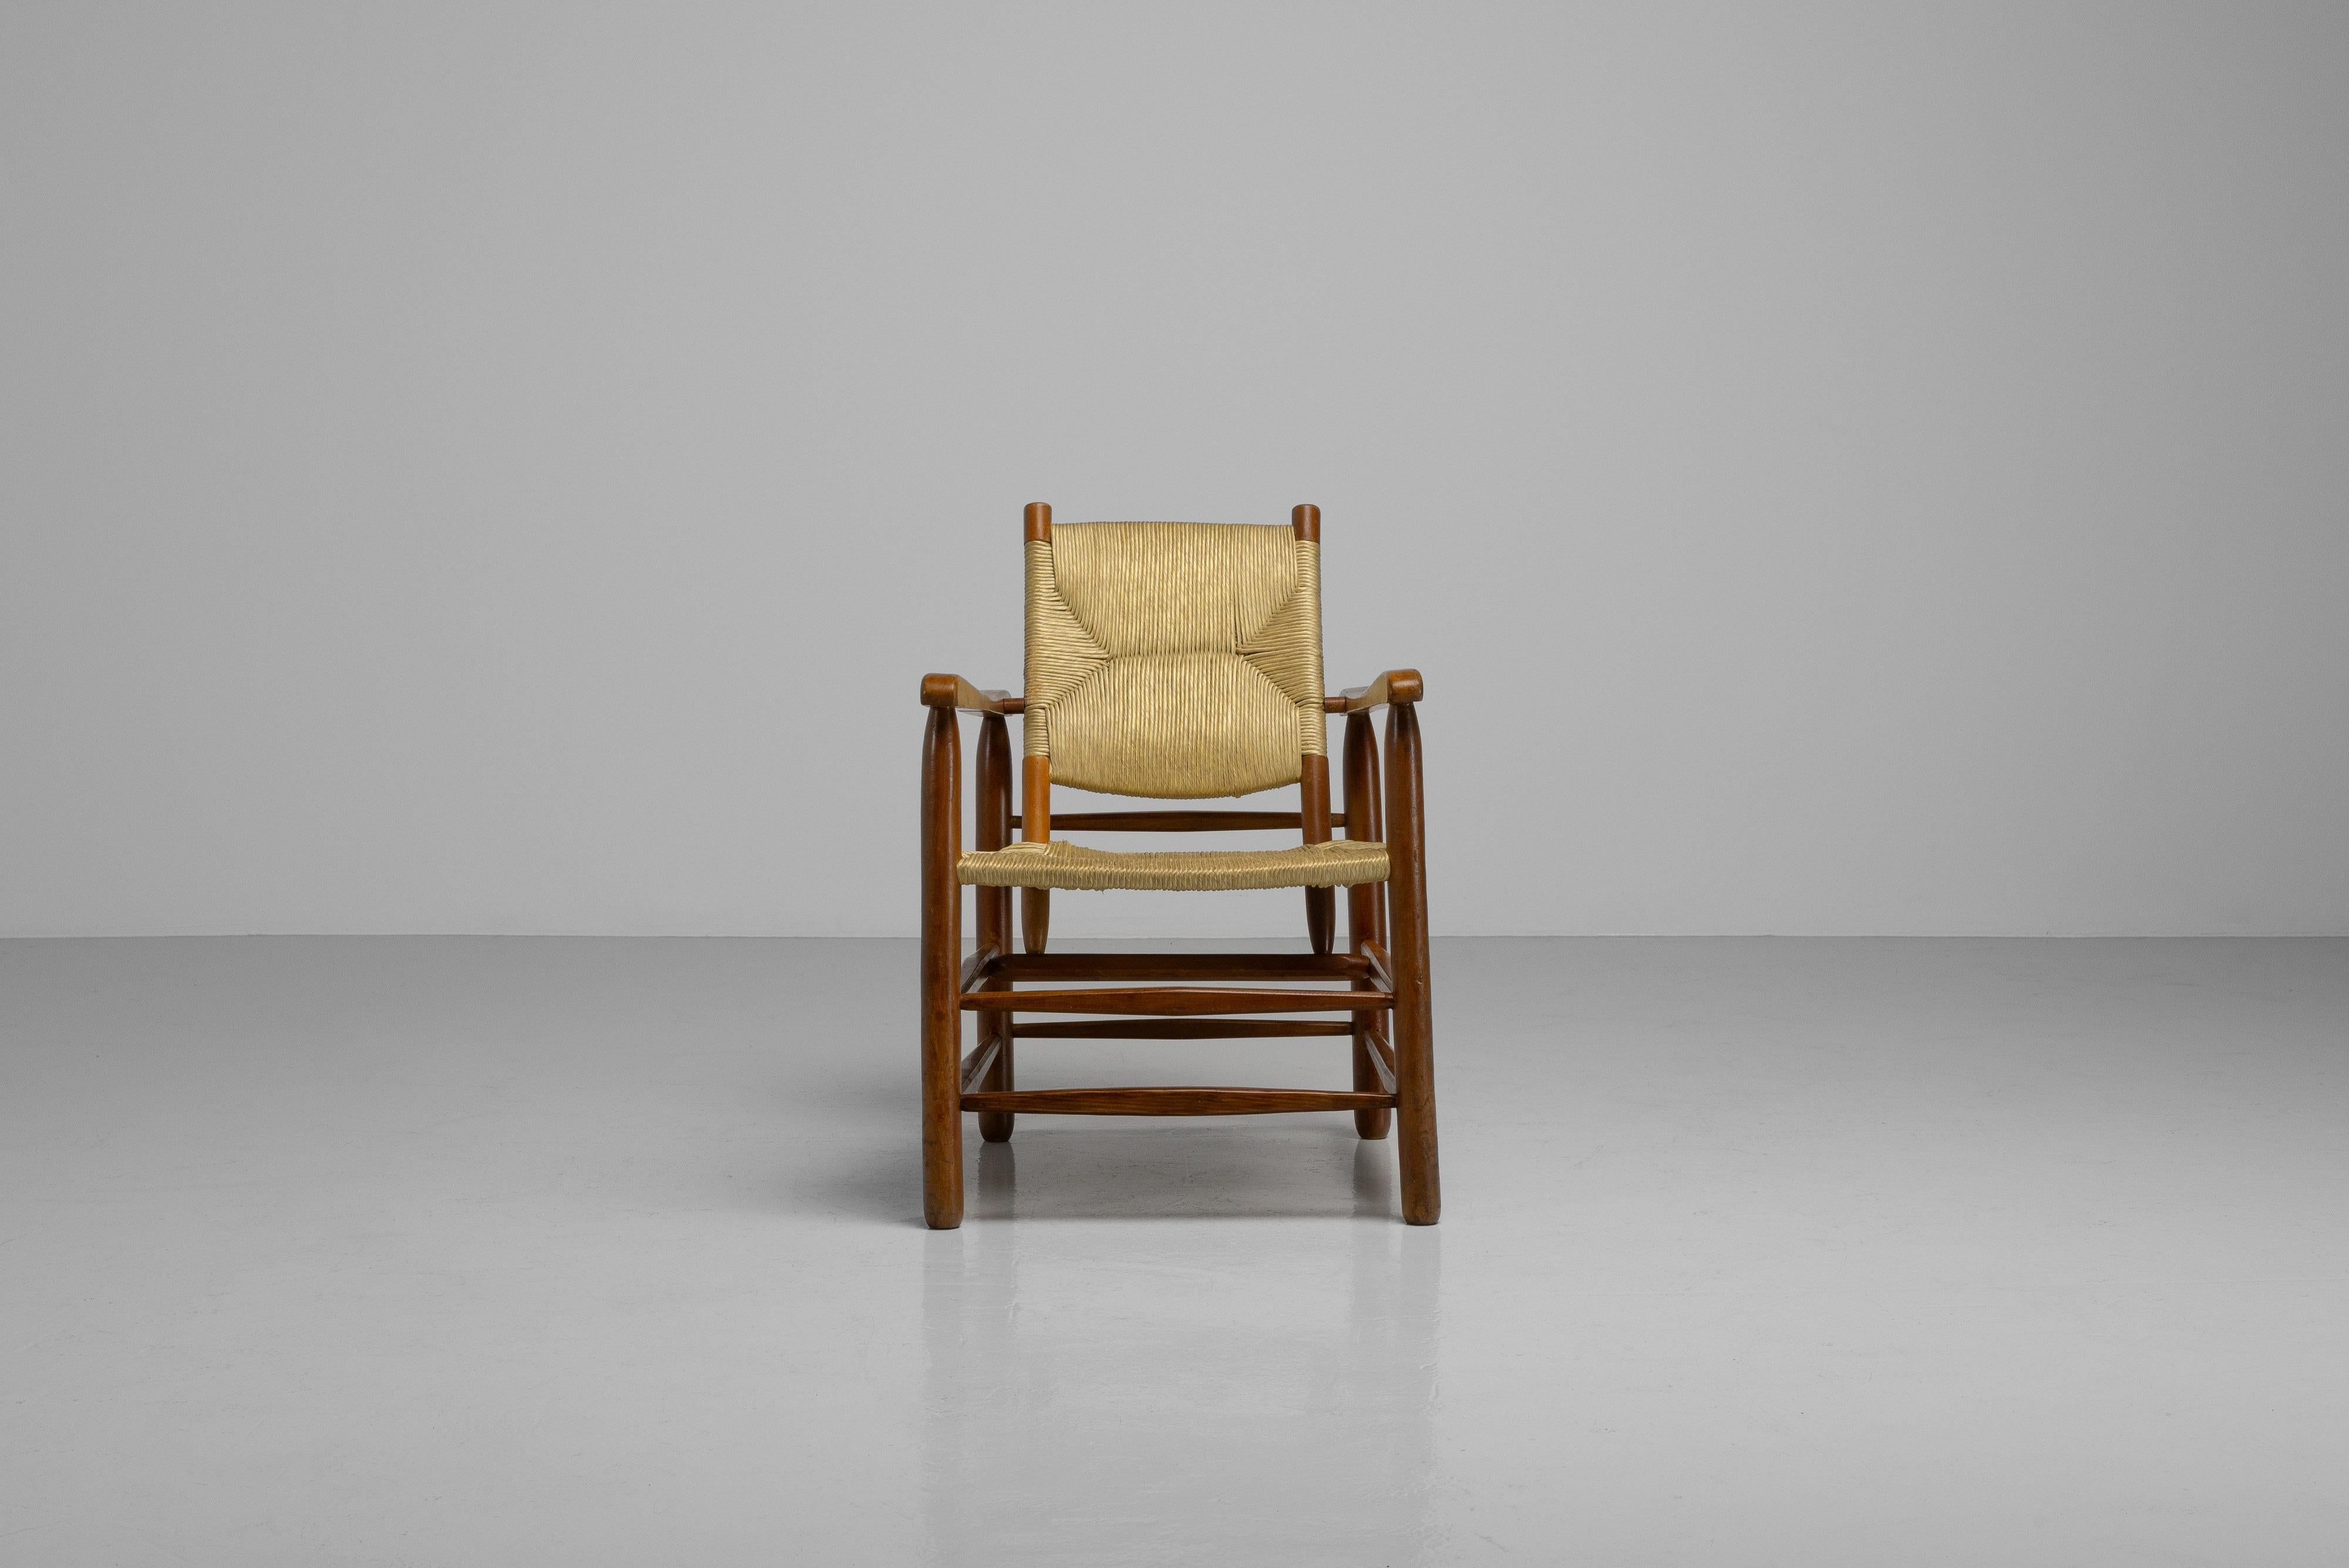 Seltener Sessel, entworfen von Charlotte Perriand und hergestellt von Steph Simon in Frankreich im Jahr 1950. Dieser Sessel Modell Nr. 21 ist auch als Chamrousse bekannt. Perriand ließ sich zu diesem ikonischen Stuhl durch ihre idyllischen